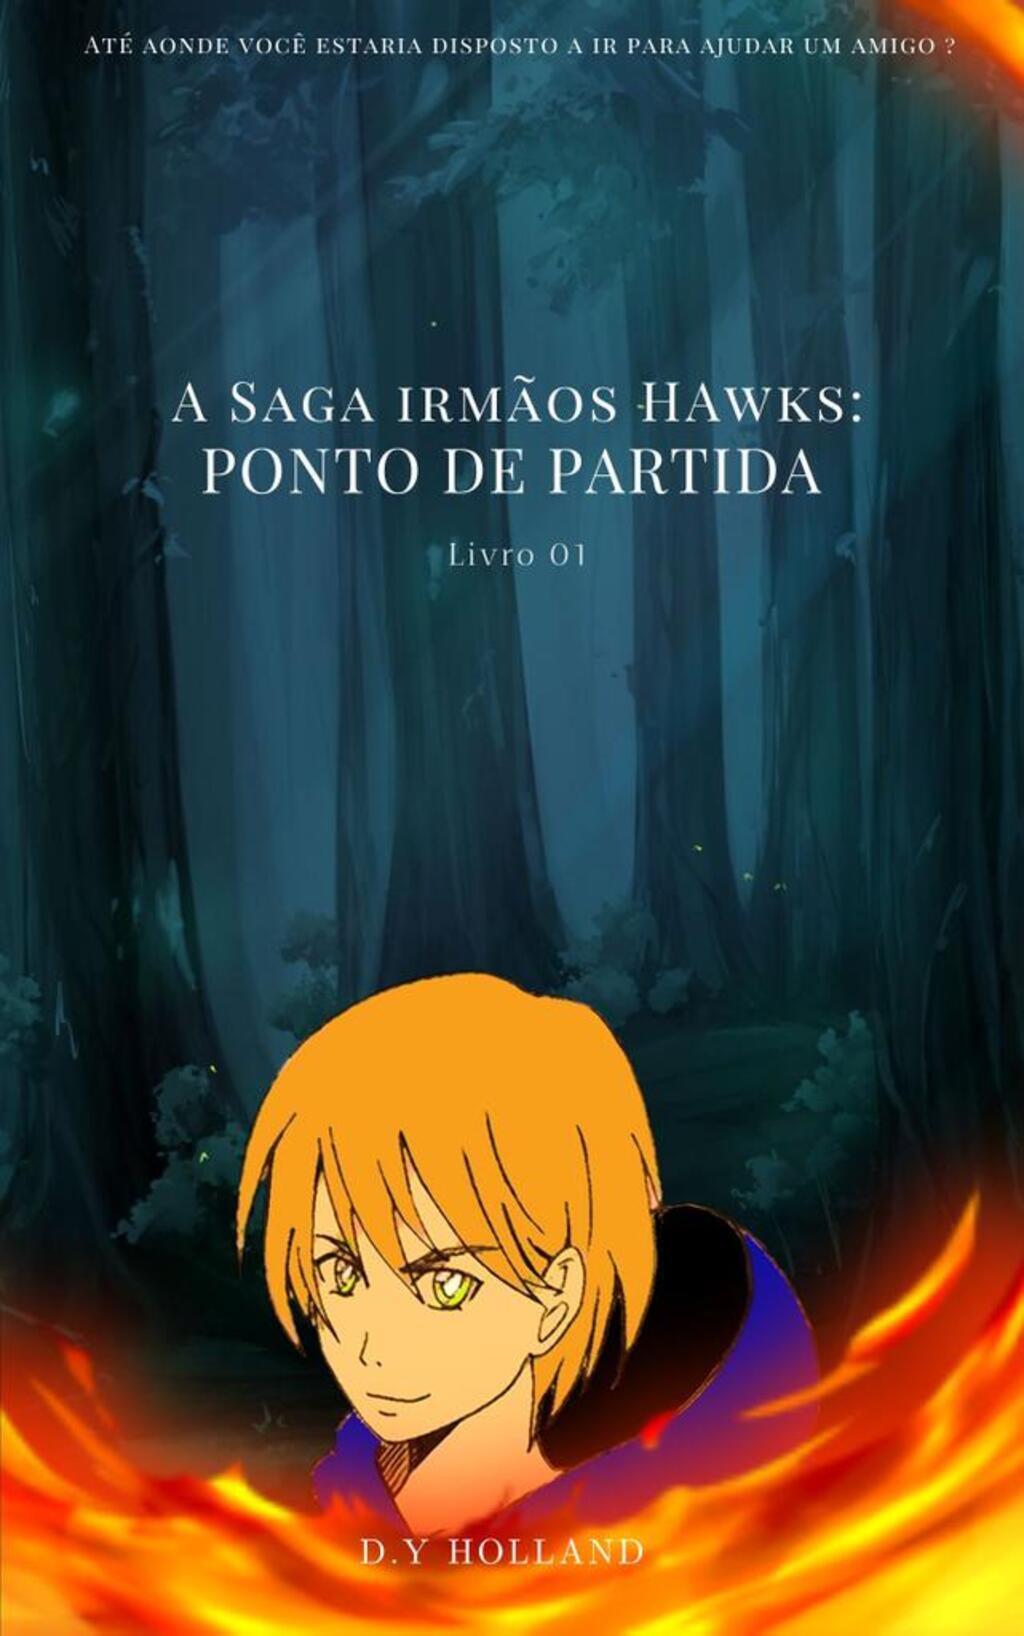 A Saga irmãos Hawks: Ponto de partida - livro 01